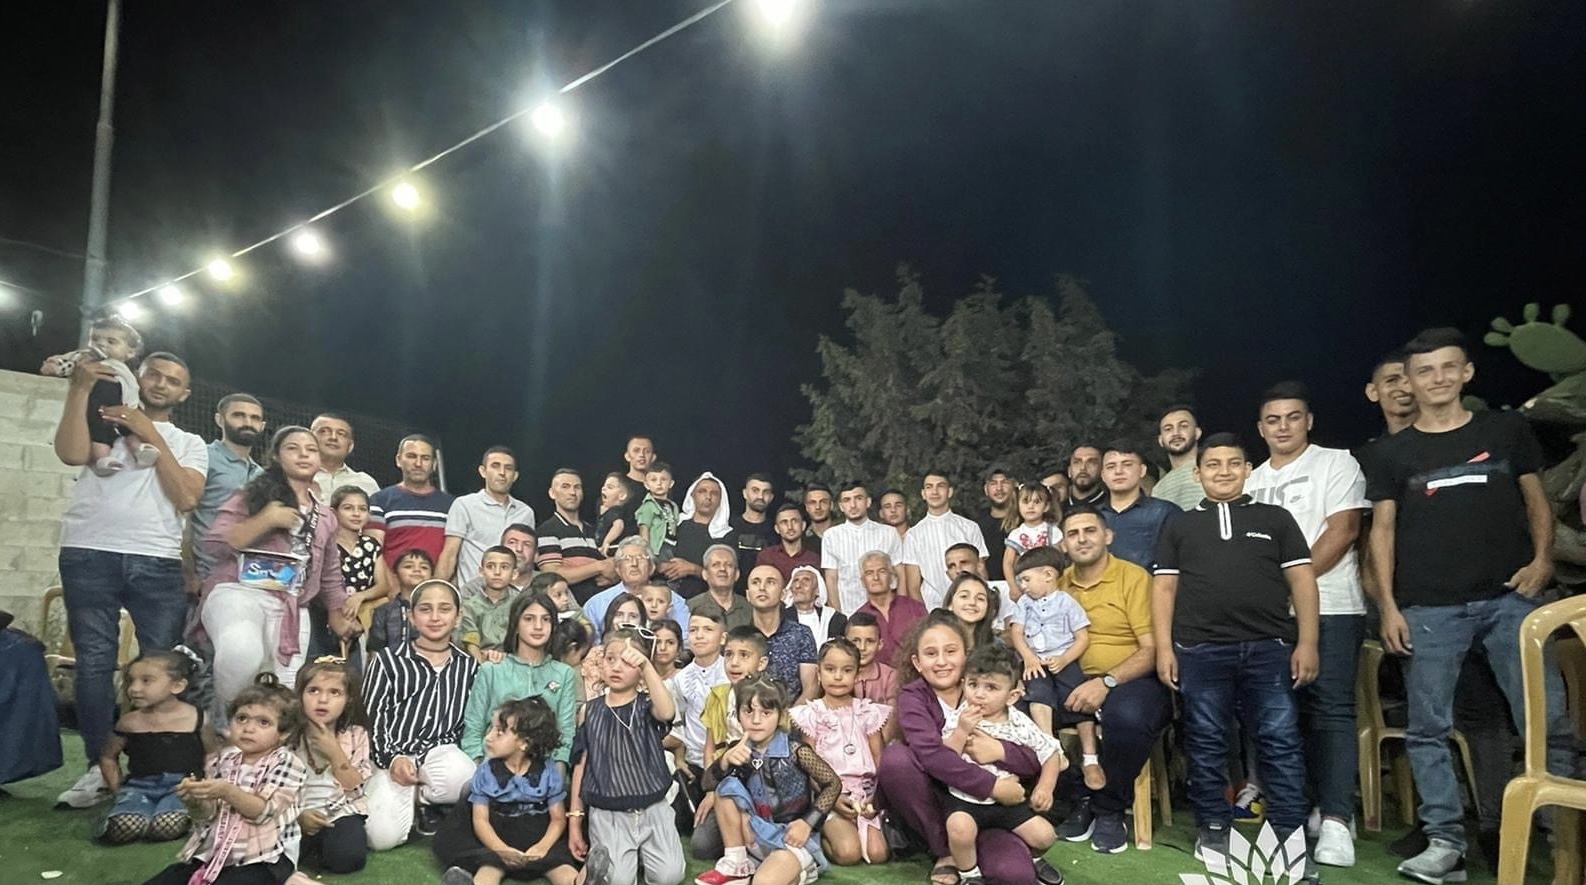 تسعيني فلسطيني يحتفل بالعيد مع أولاده وأحفاده الـ 300 